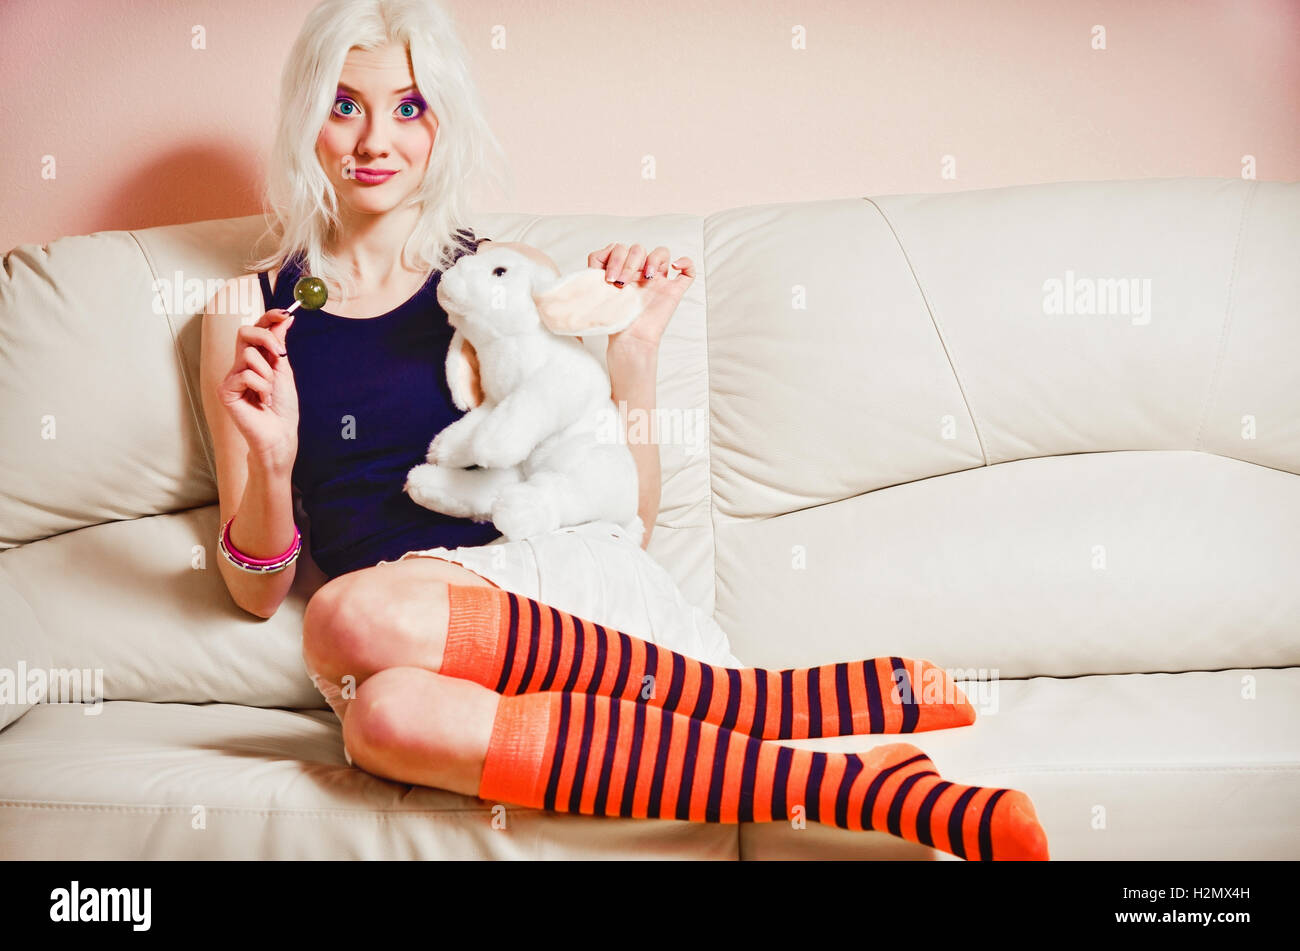 Closeup portrait of cute blonde girl avec des bonbons et lapin toy Banque D'Images